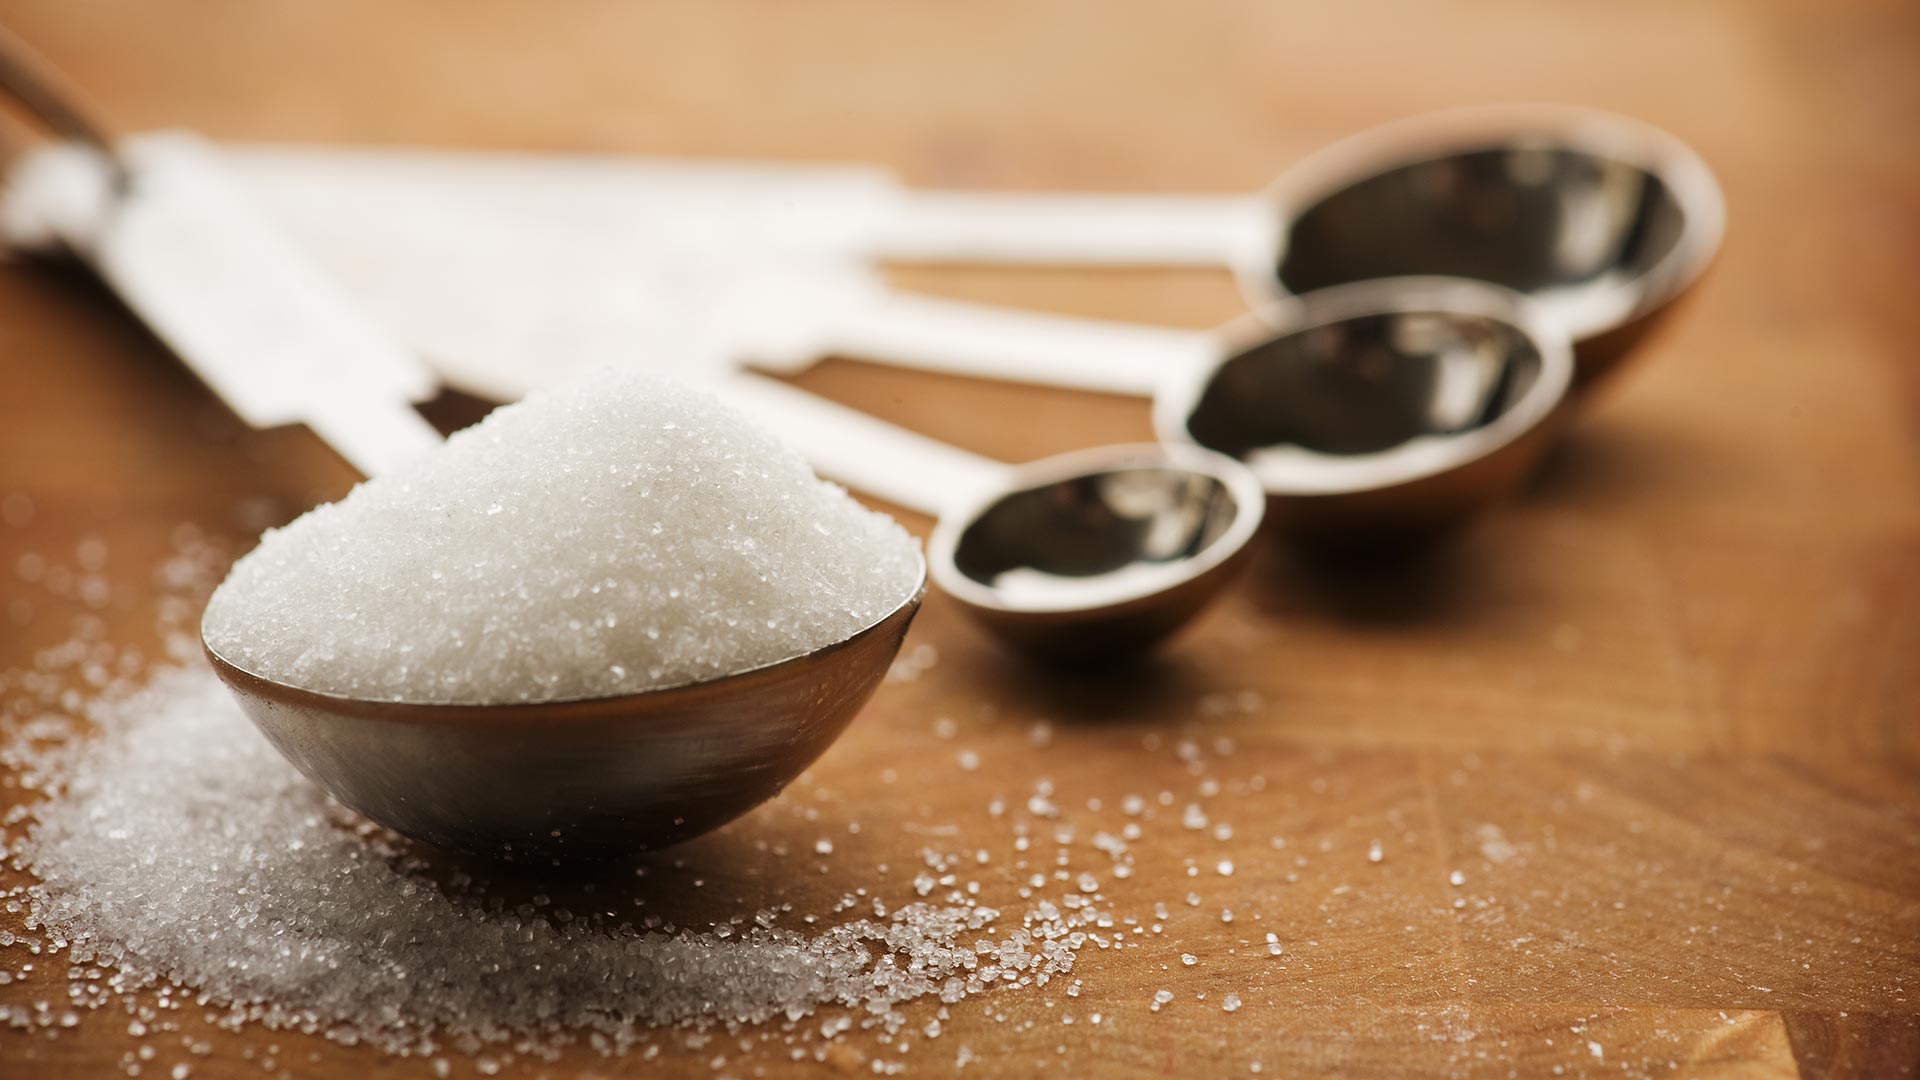 sugar can cause gum disease